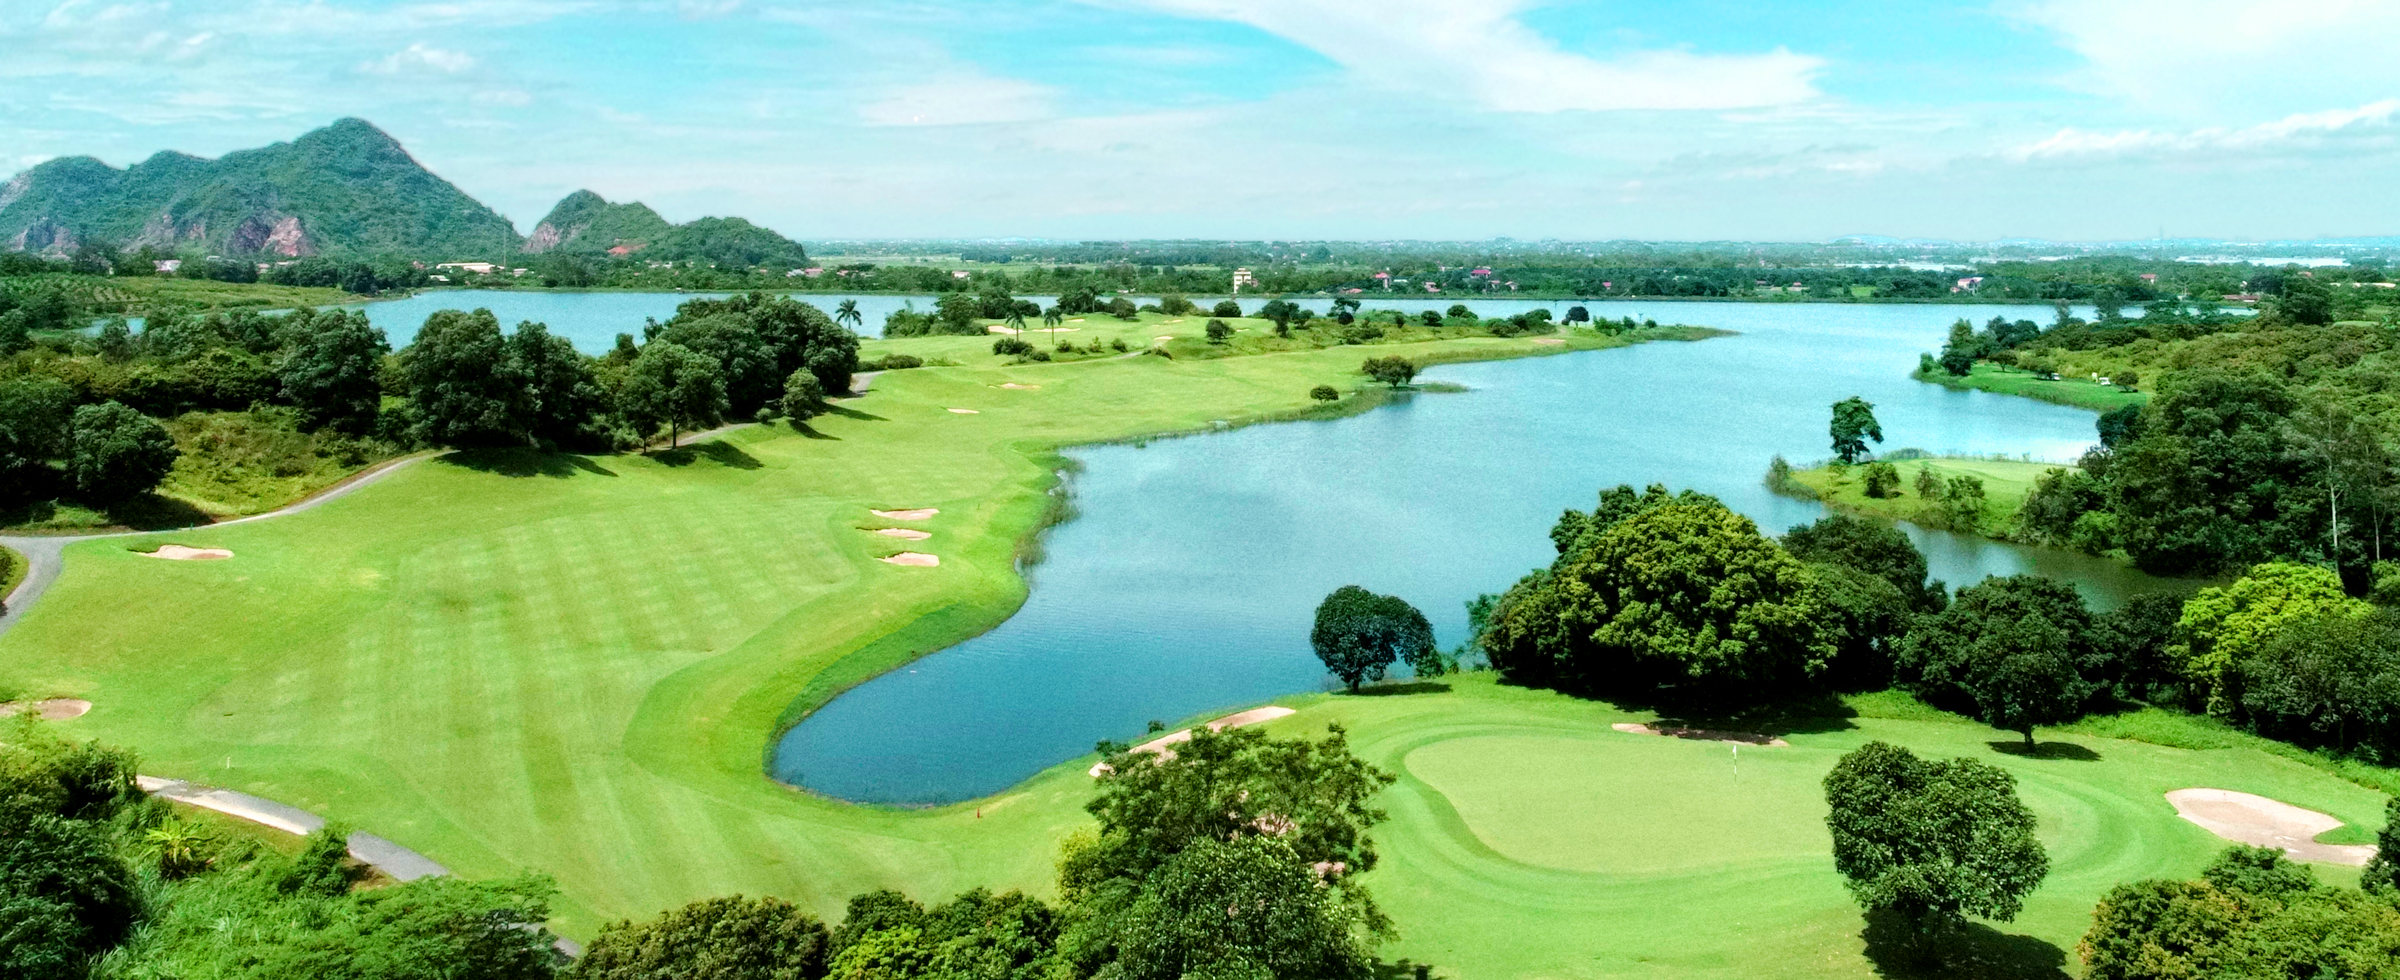 hanoi - ha long bay golf tours